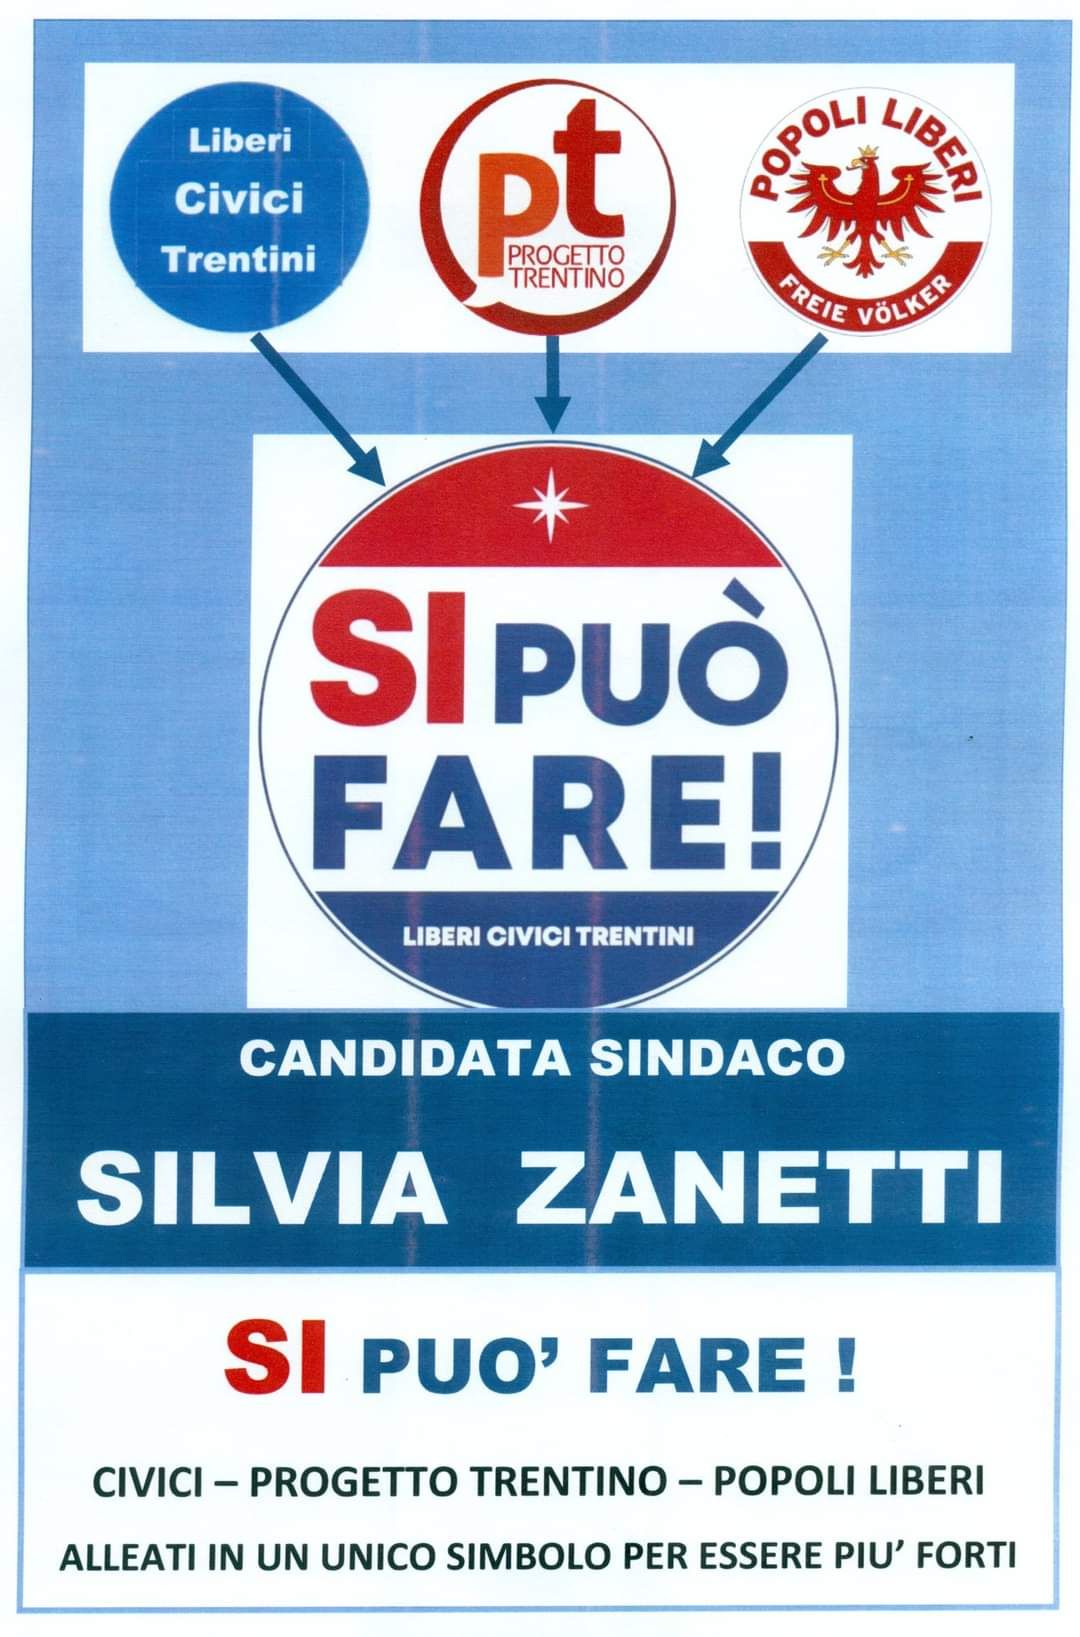 Popoli Liberi alleato con Progetto Trentino e Liberi Civici Trentini alle elezioni comunali Trento 2020